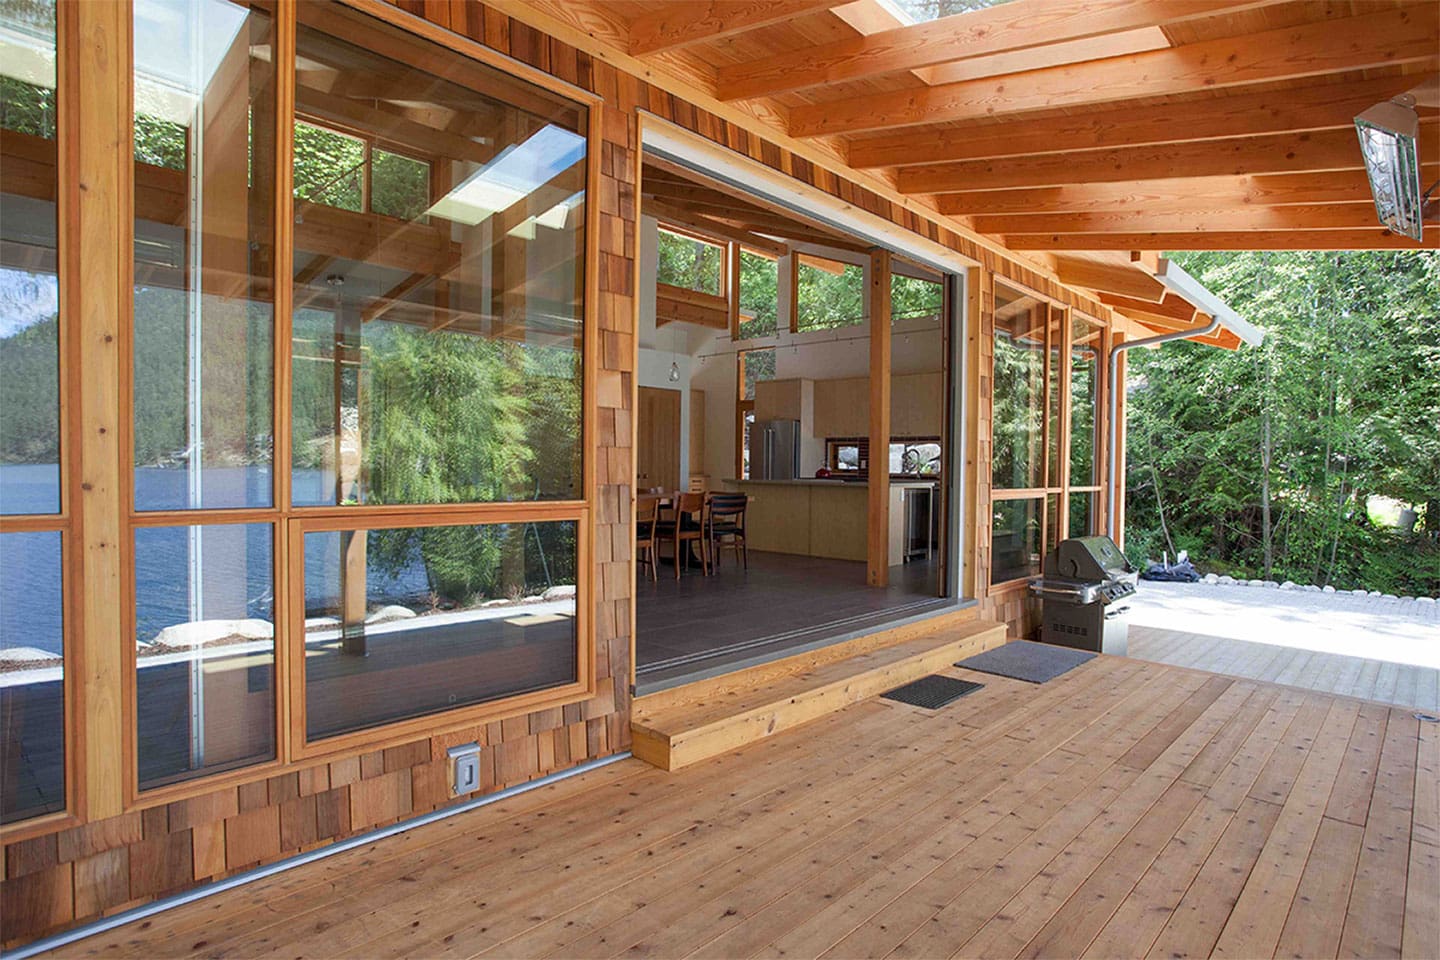 Exterior deck view of Timber Frame Log Home.